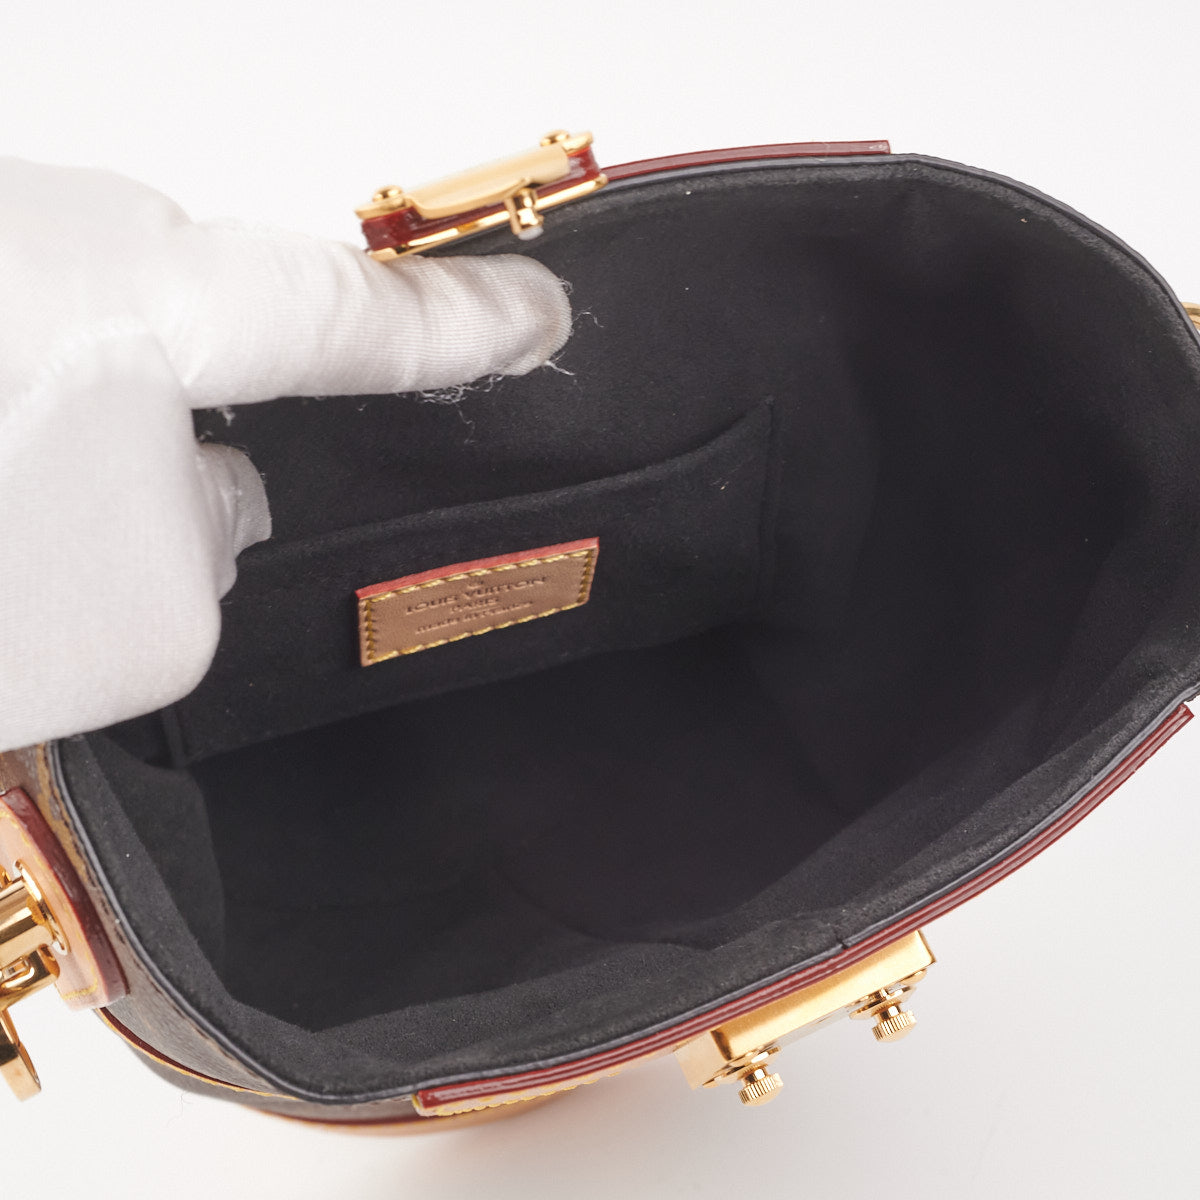 Louis Vuitton Duffle Bag Monogram Canvas - THE PURSE AFFAIR